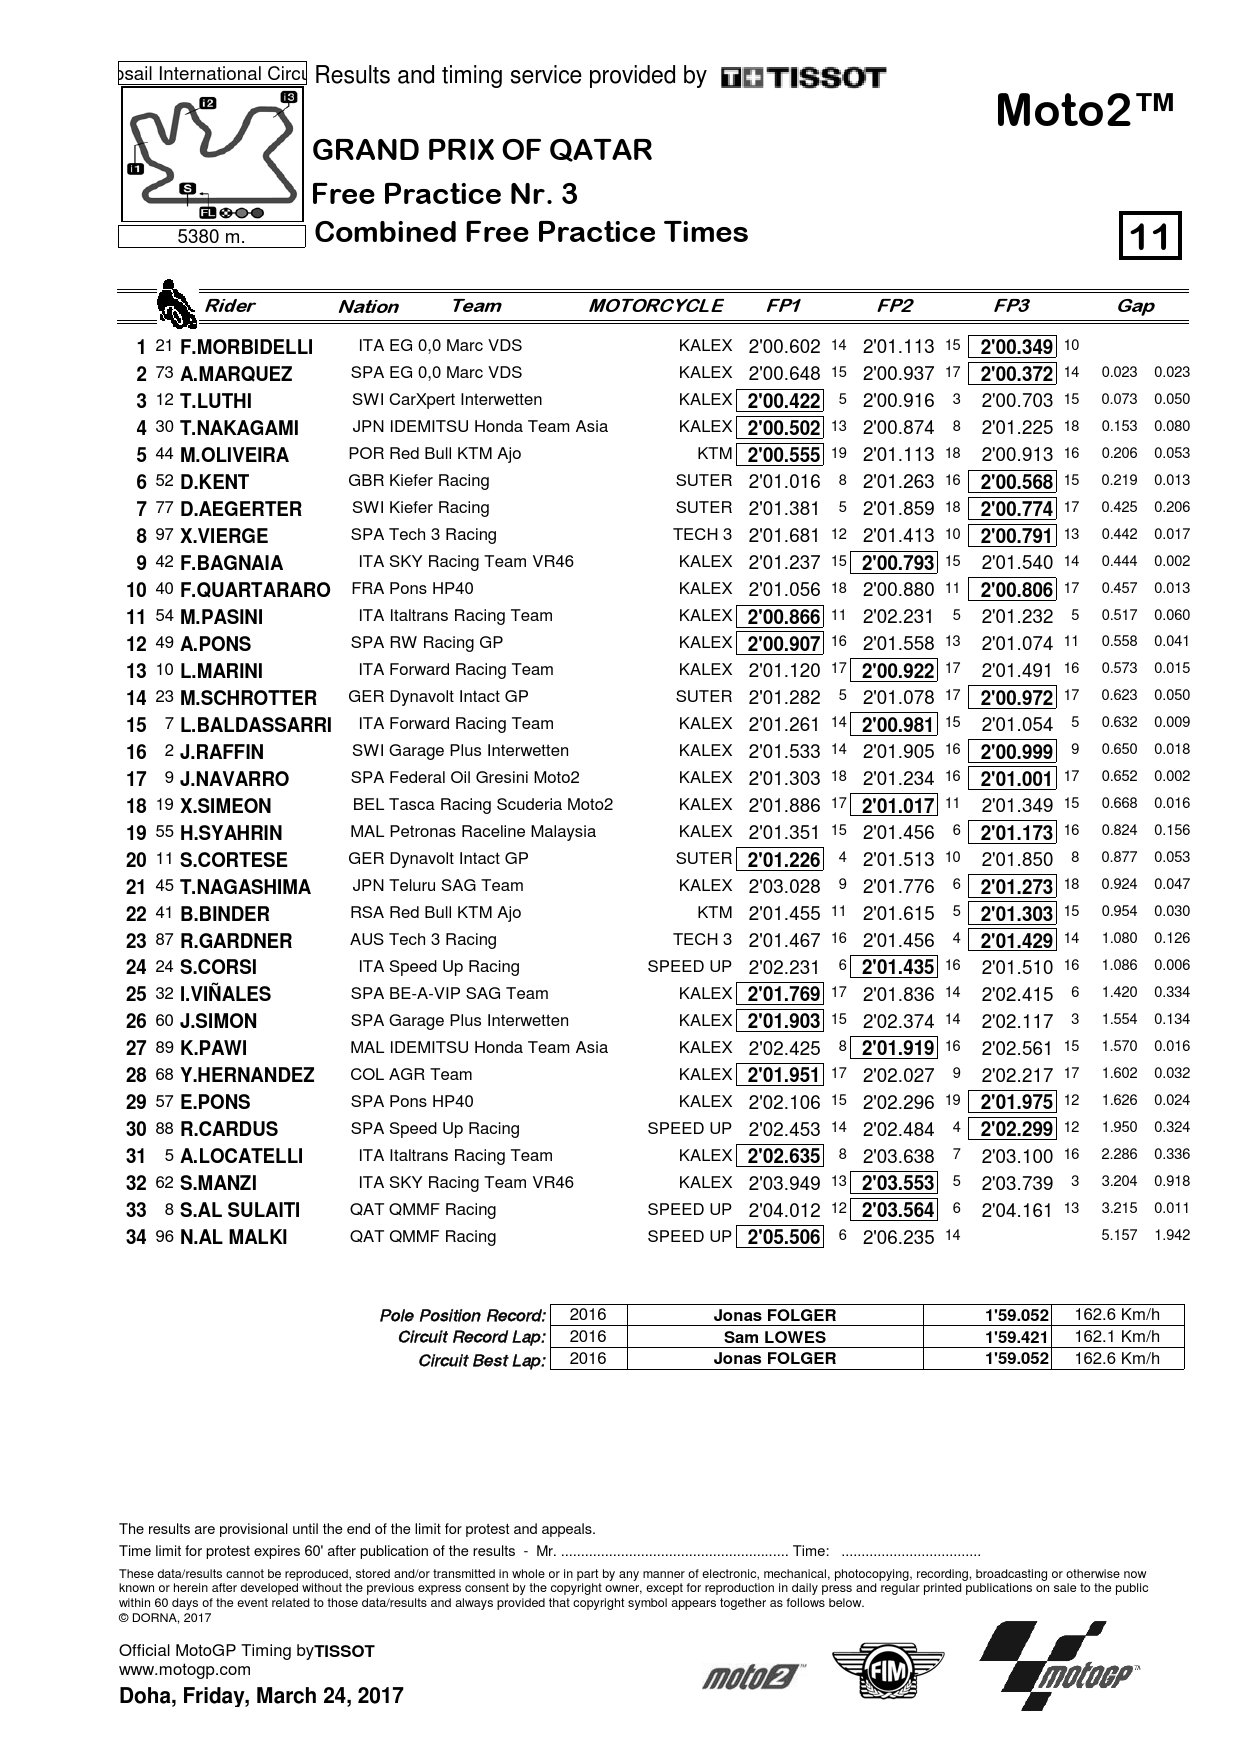 Объединенные результаты FP1, FP2 и FP3 Гран-При Катара, класс Moto2